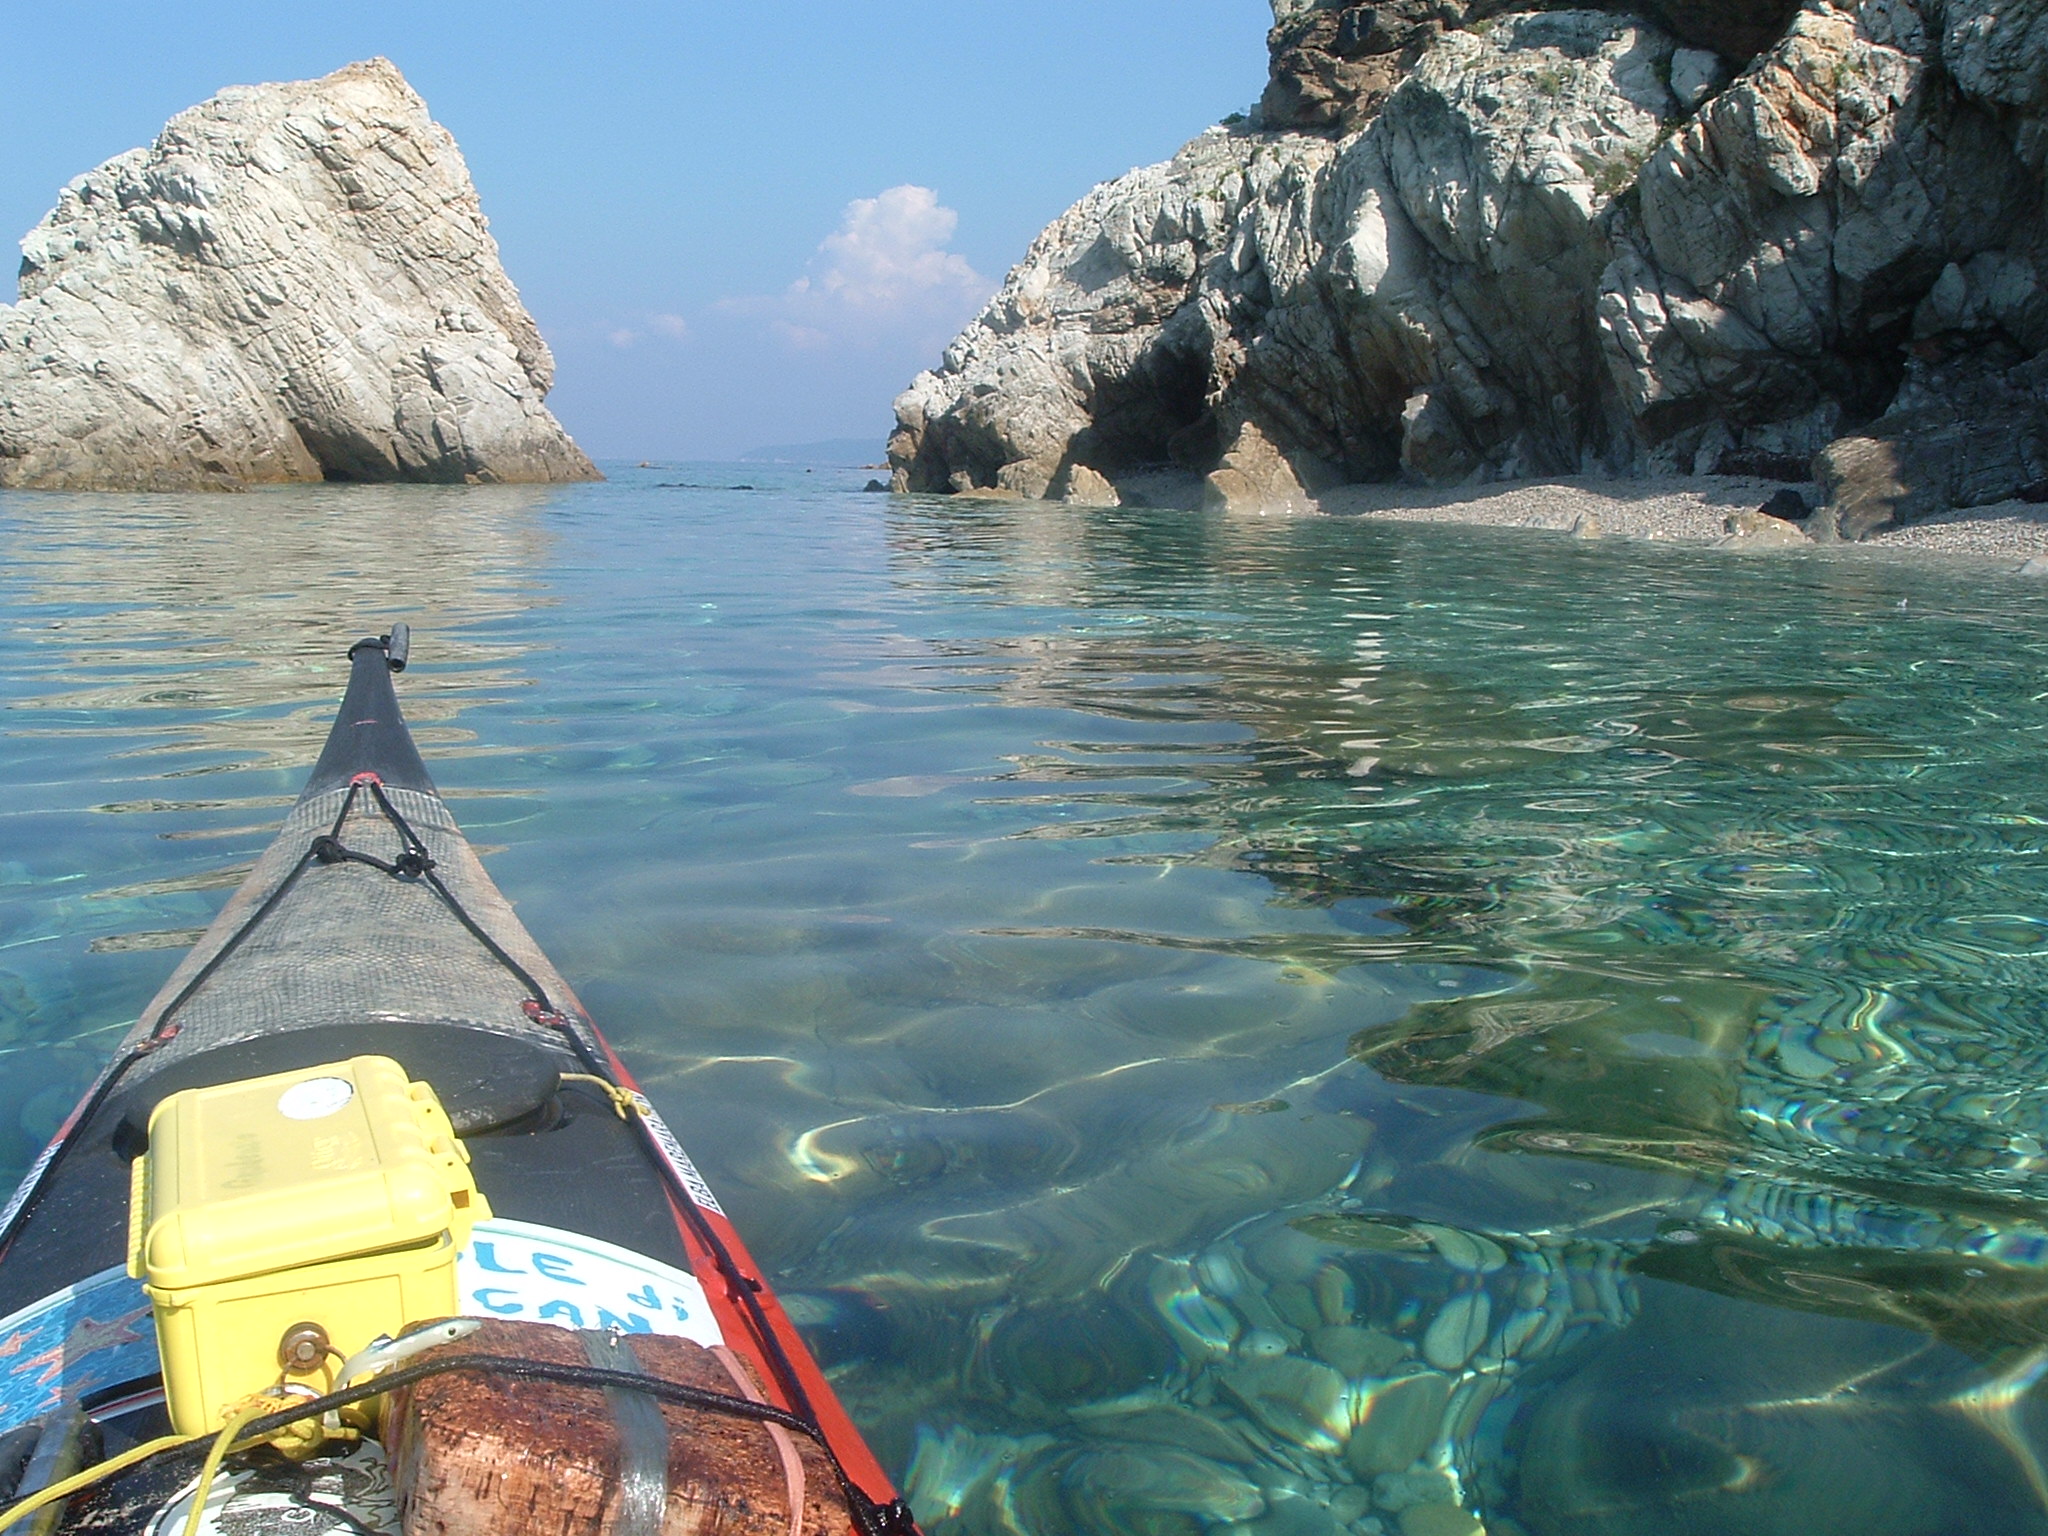 Sea Kayak Italy